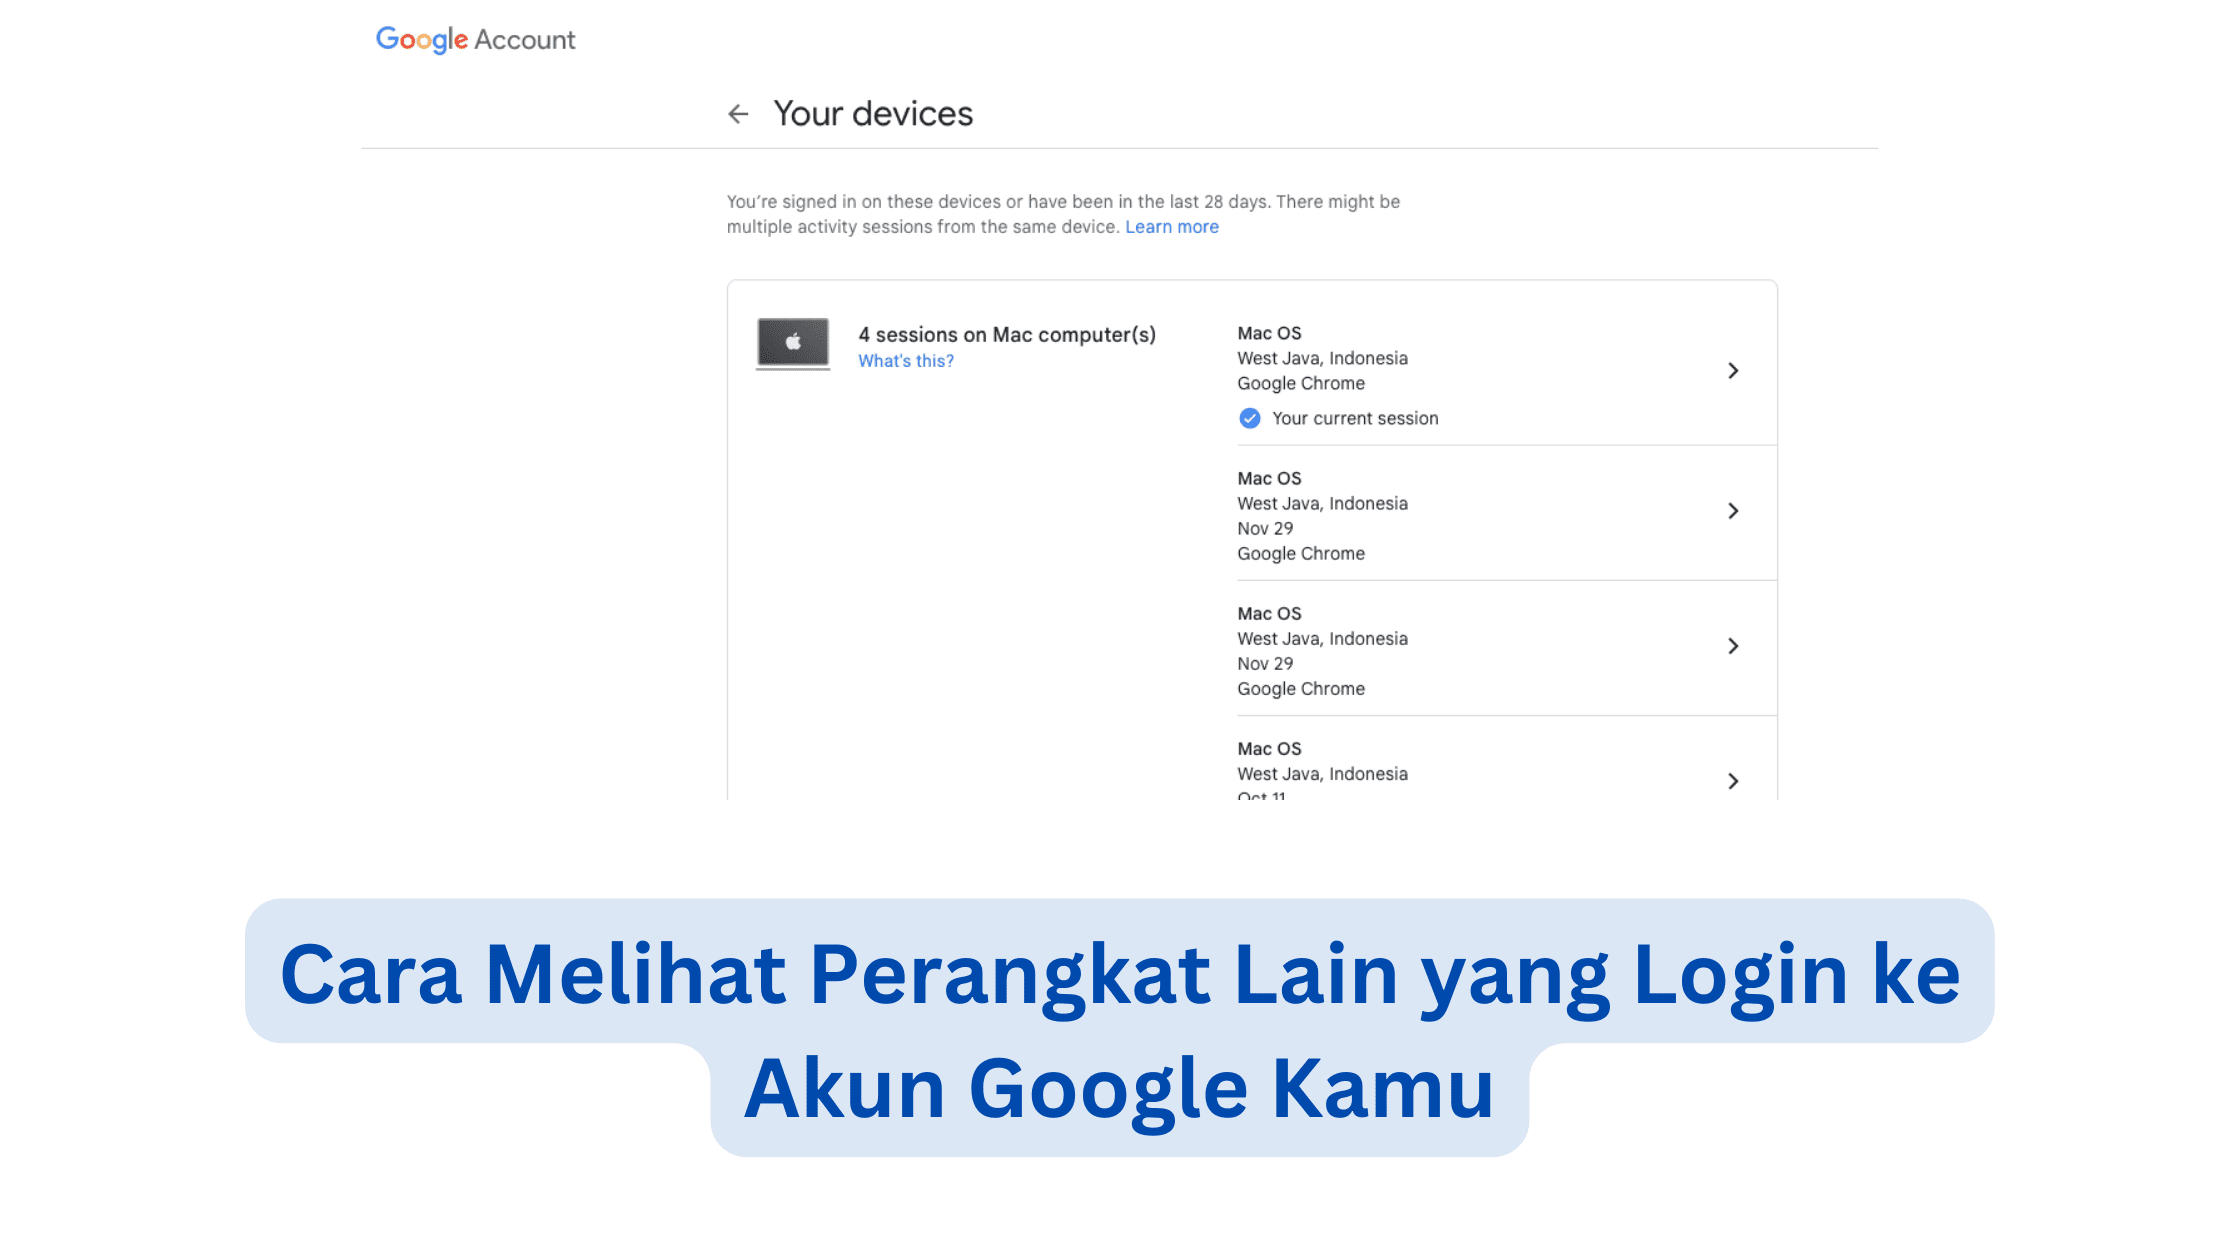 Cara Melihat Perangkat Lain yang Login ke Akun Google Kamu